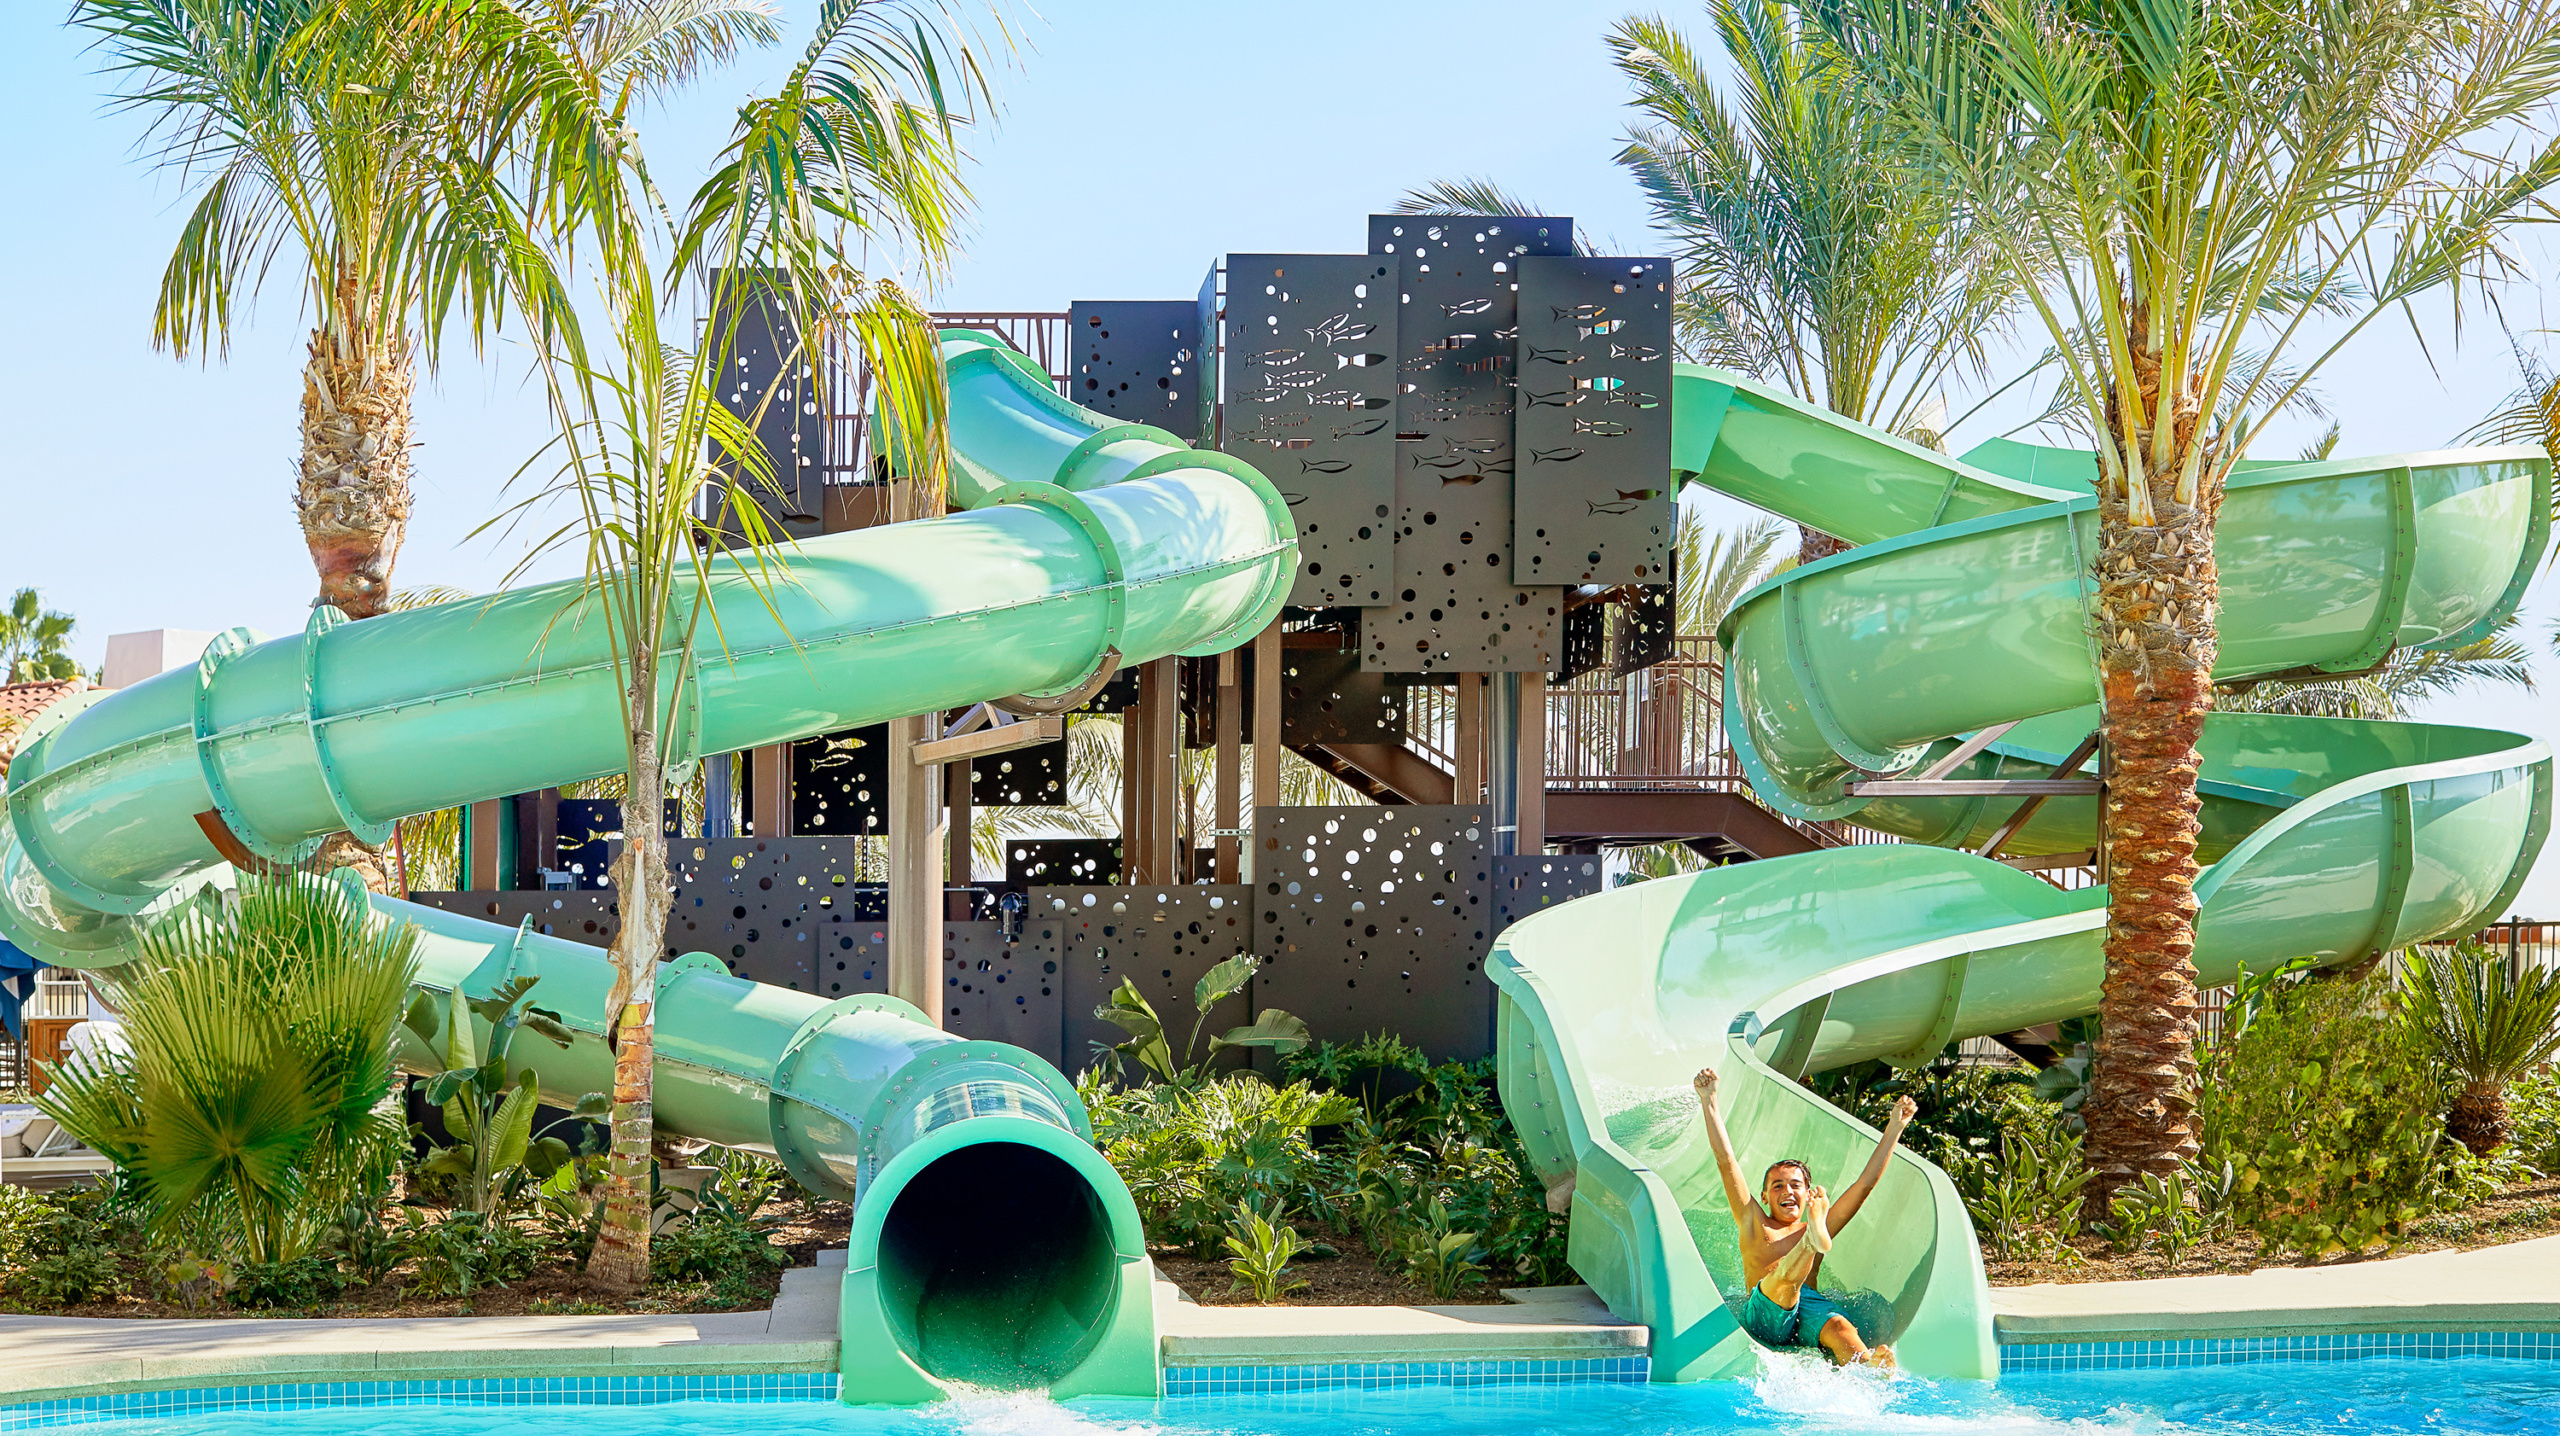 AquaTube and Pool Sider Tower, Park Hyatt Aviara Resort, Carlsbad, USA